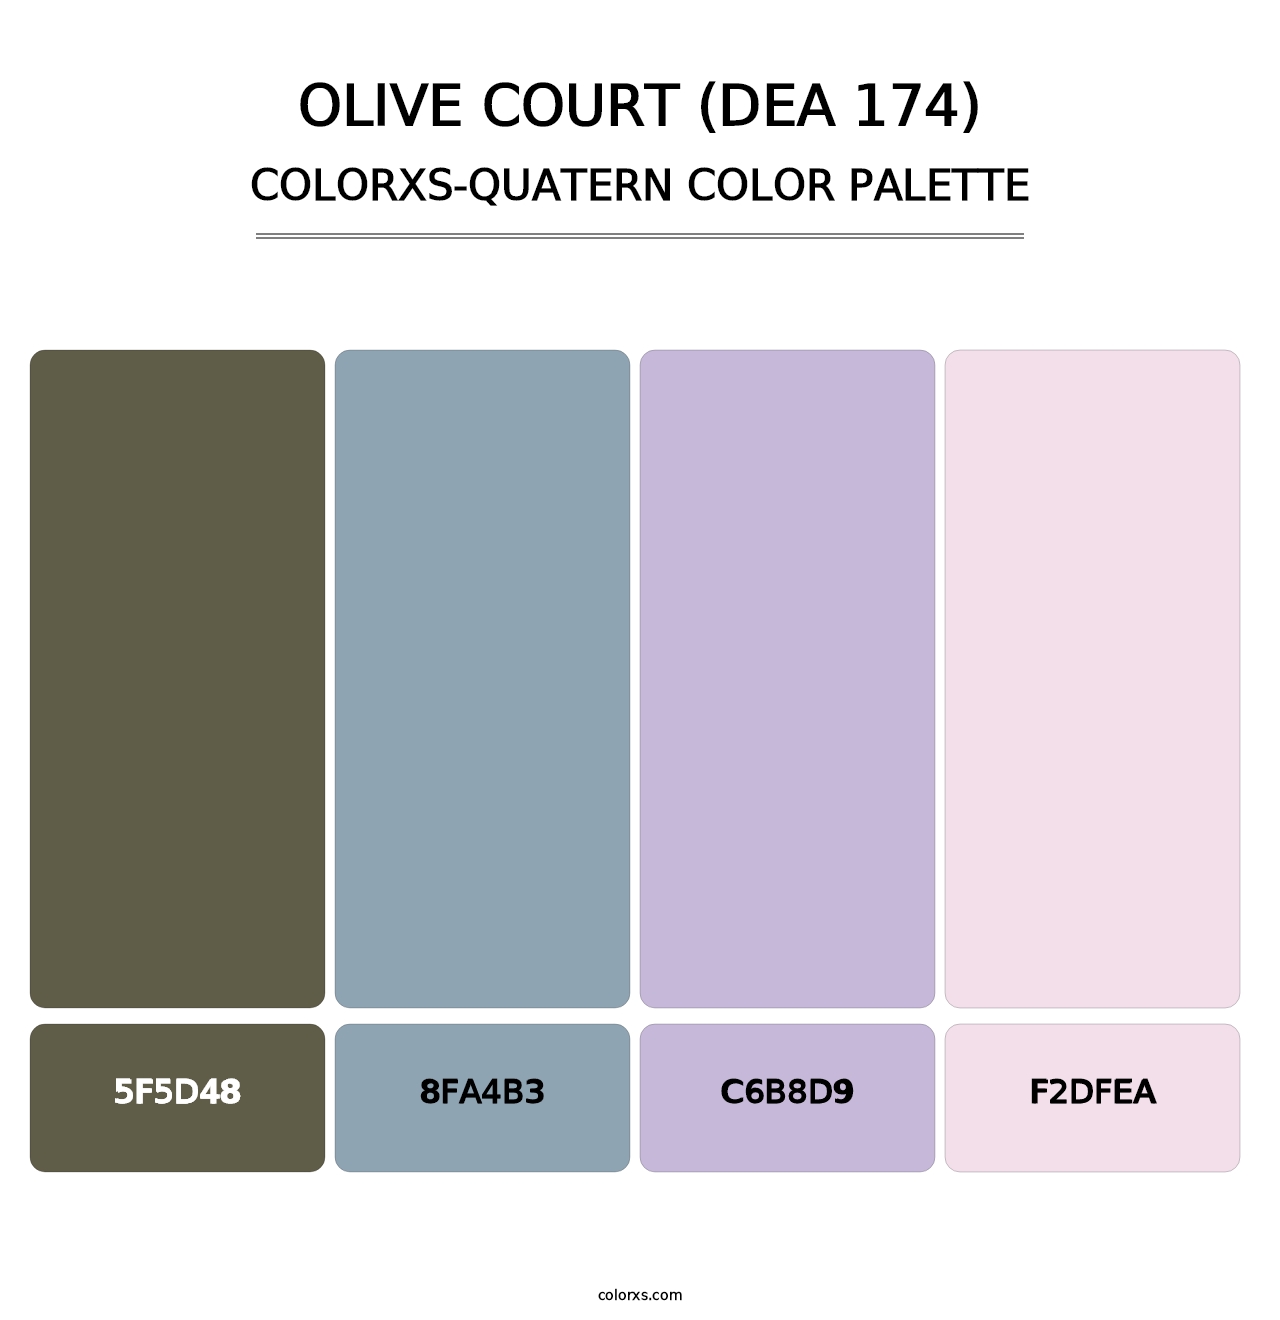 Olive Court (DEA 174) - Colorxs Quatern Palette